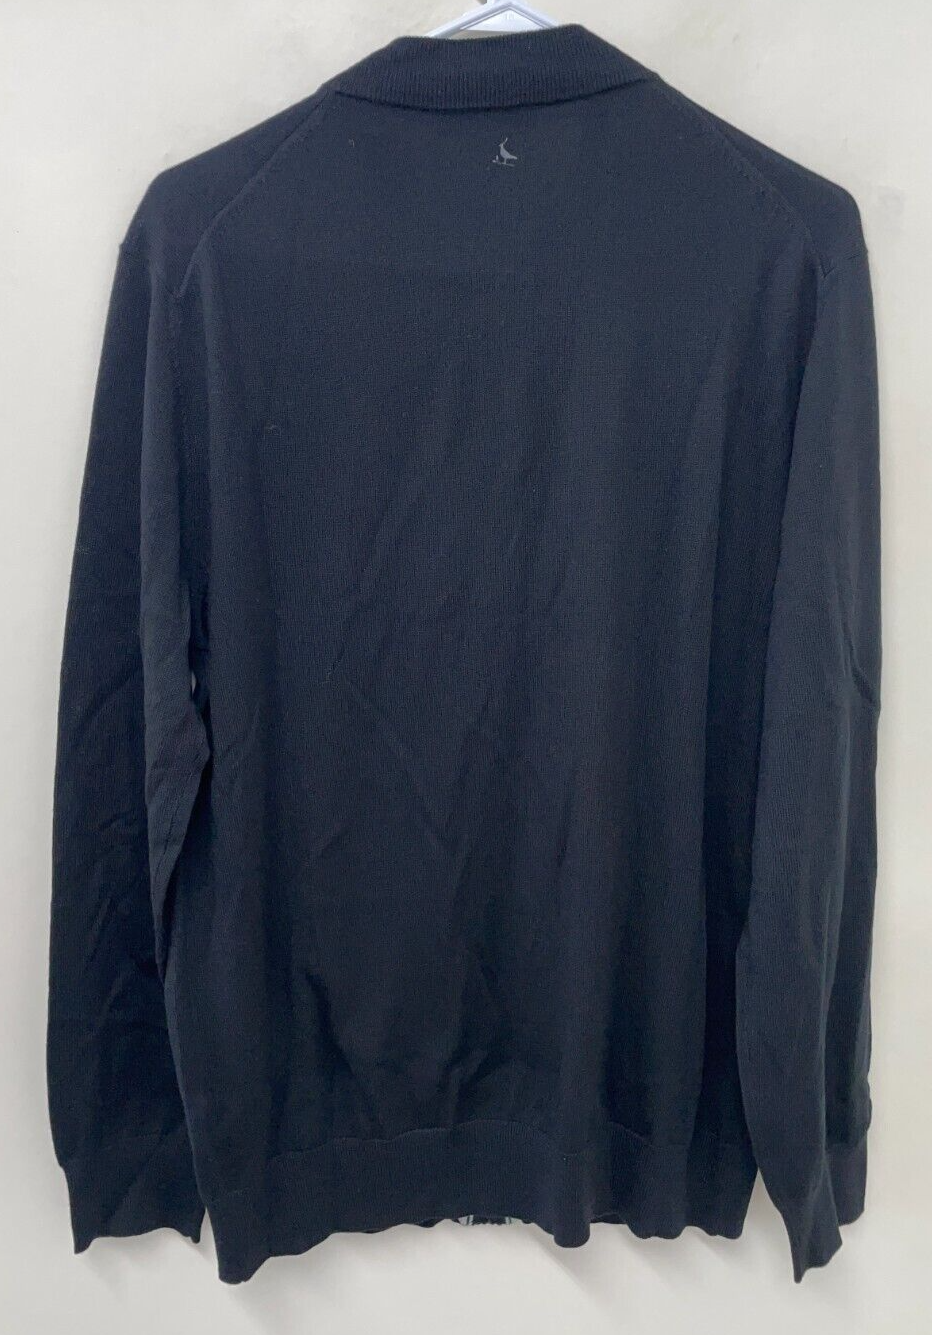 Charles Tyrwhitt Mens L New York Jets Merino Wool Full-Zip Sweater Black Bomber